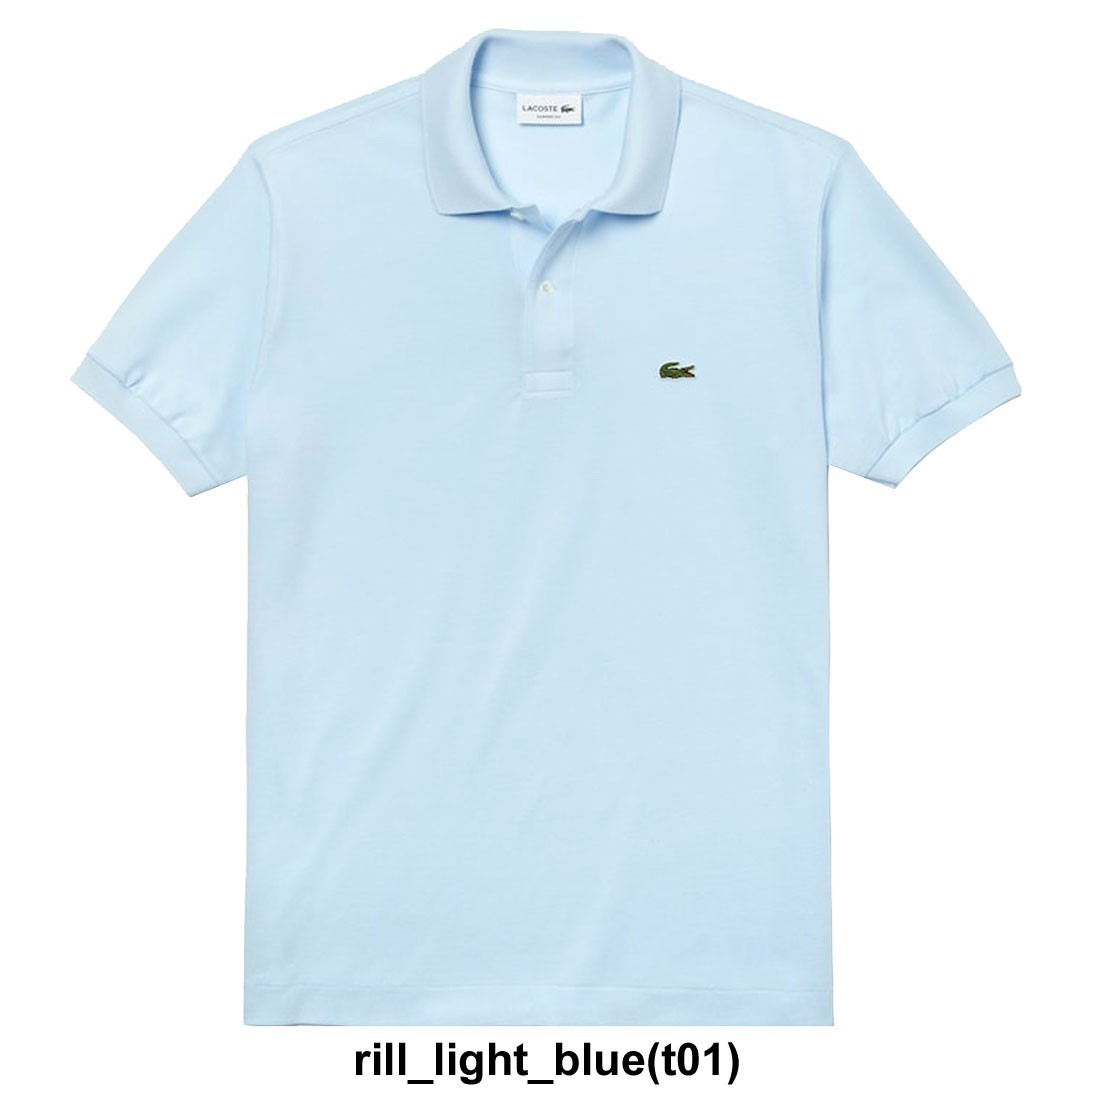 (SALE)LACOSTE(ラコステ)ポロシャツ 半袖 鹿の子 メンズ 男性用 L1212 rill_light_blue(t01) L(日本XLサイズ相当) la93-l1212-t01-l★1